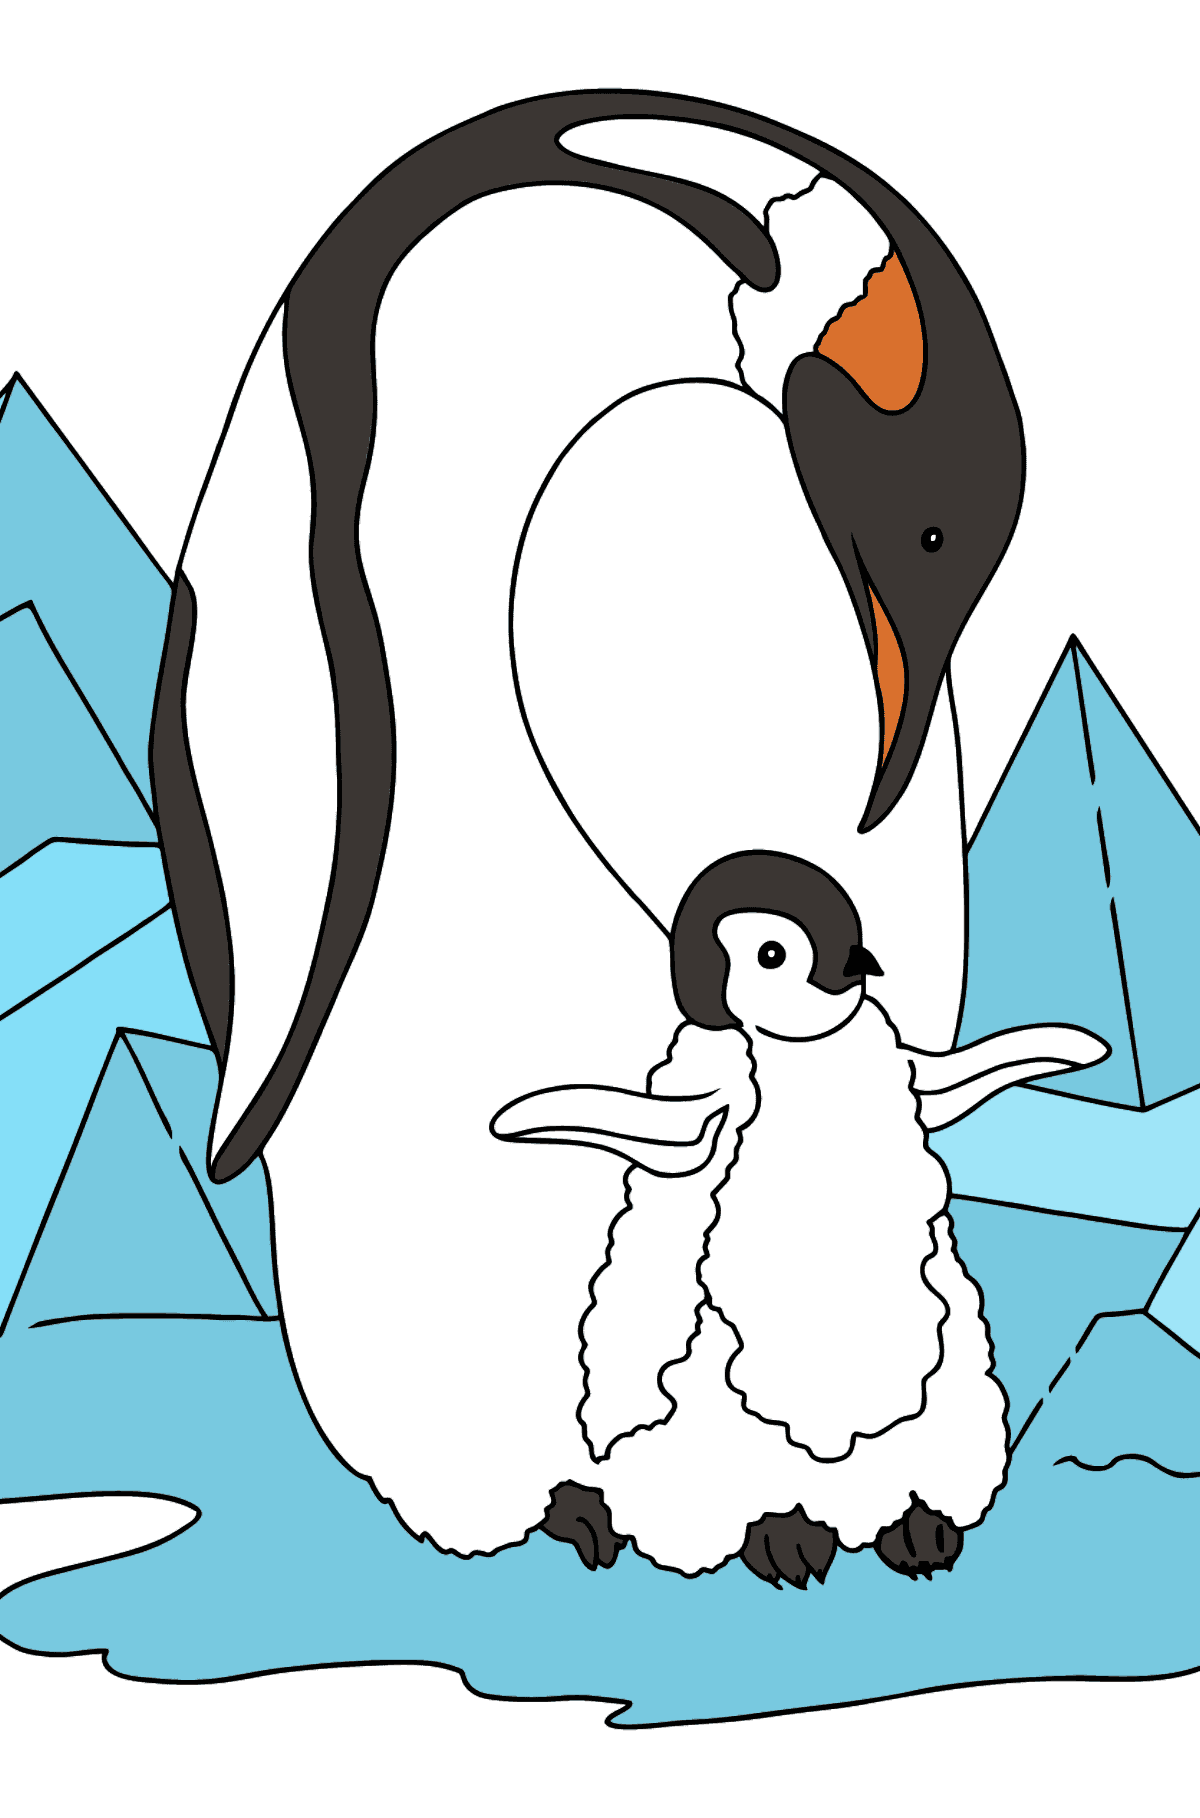 Desen de colorat pinguin pentru copii - Desene de colorat pentru copii